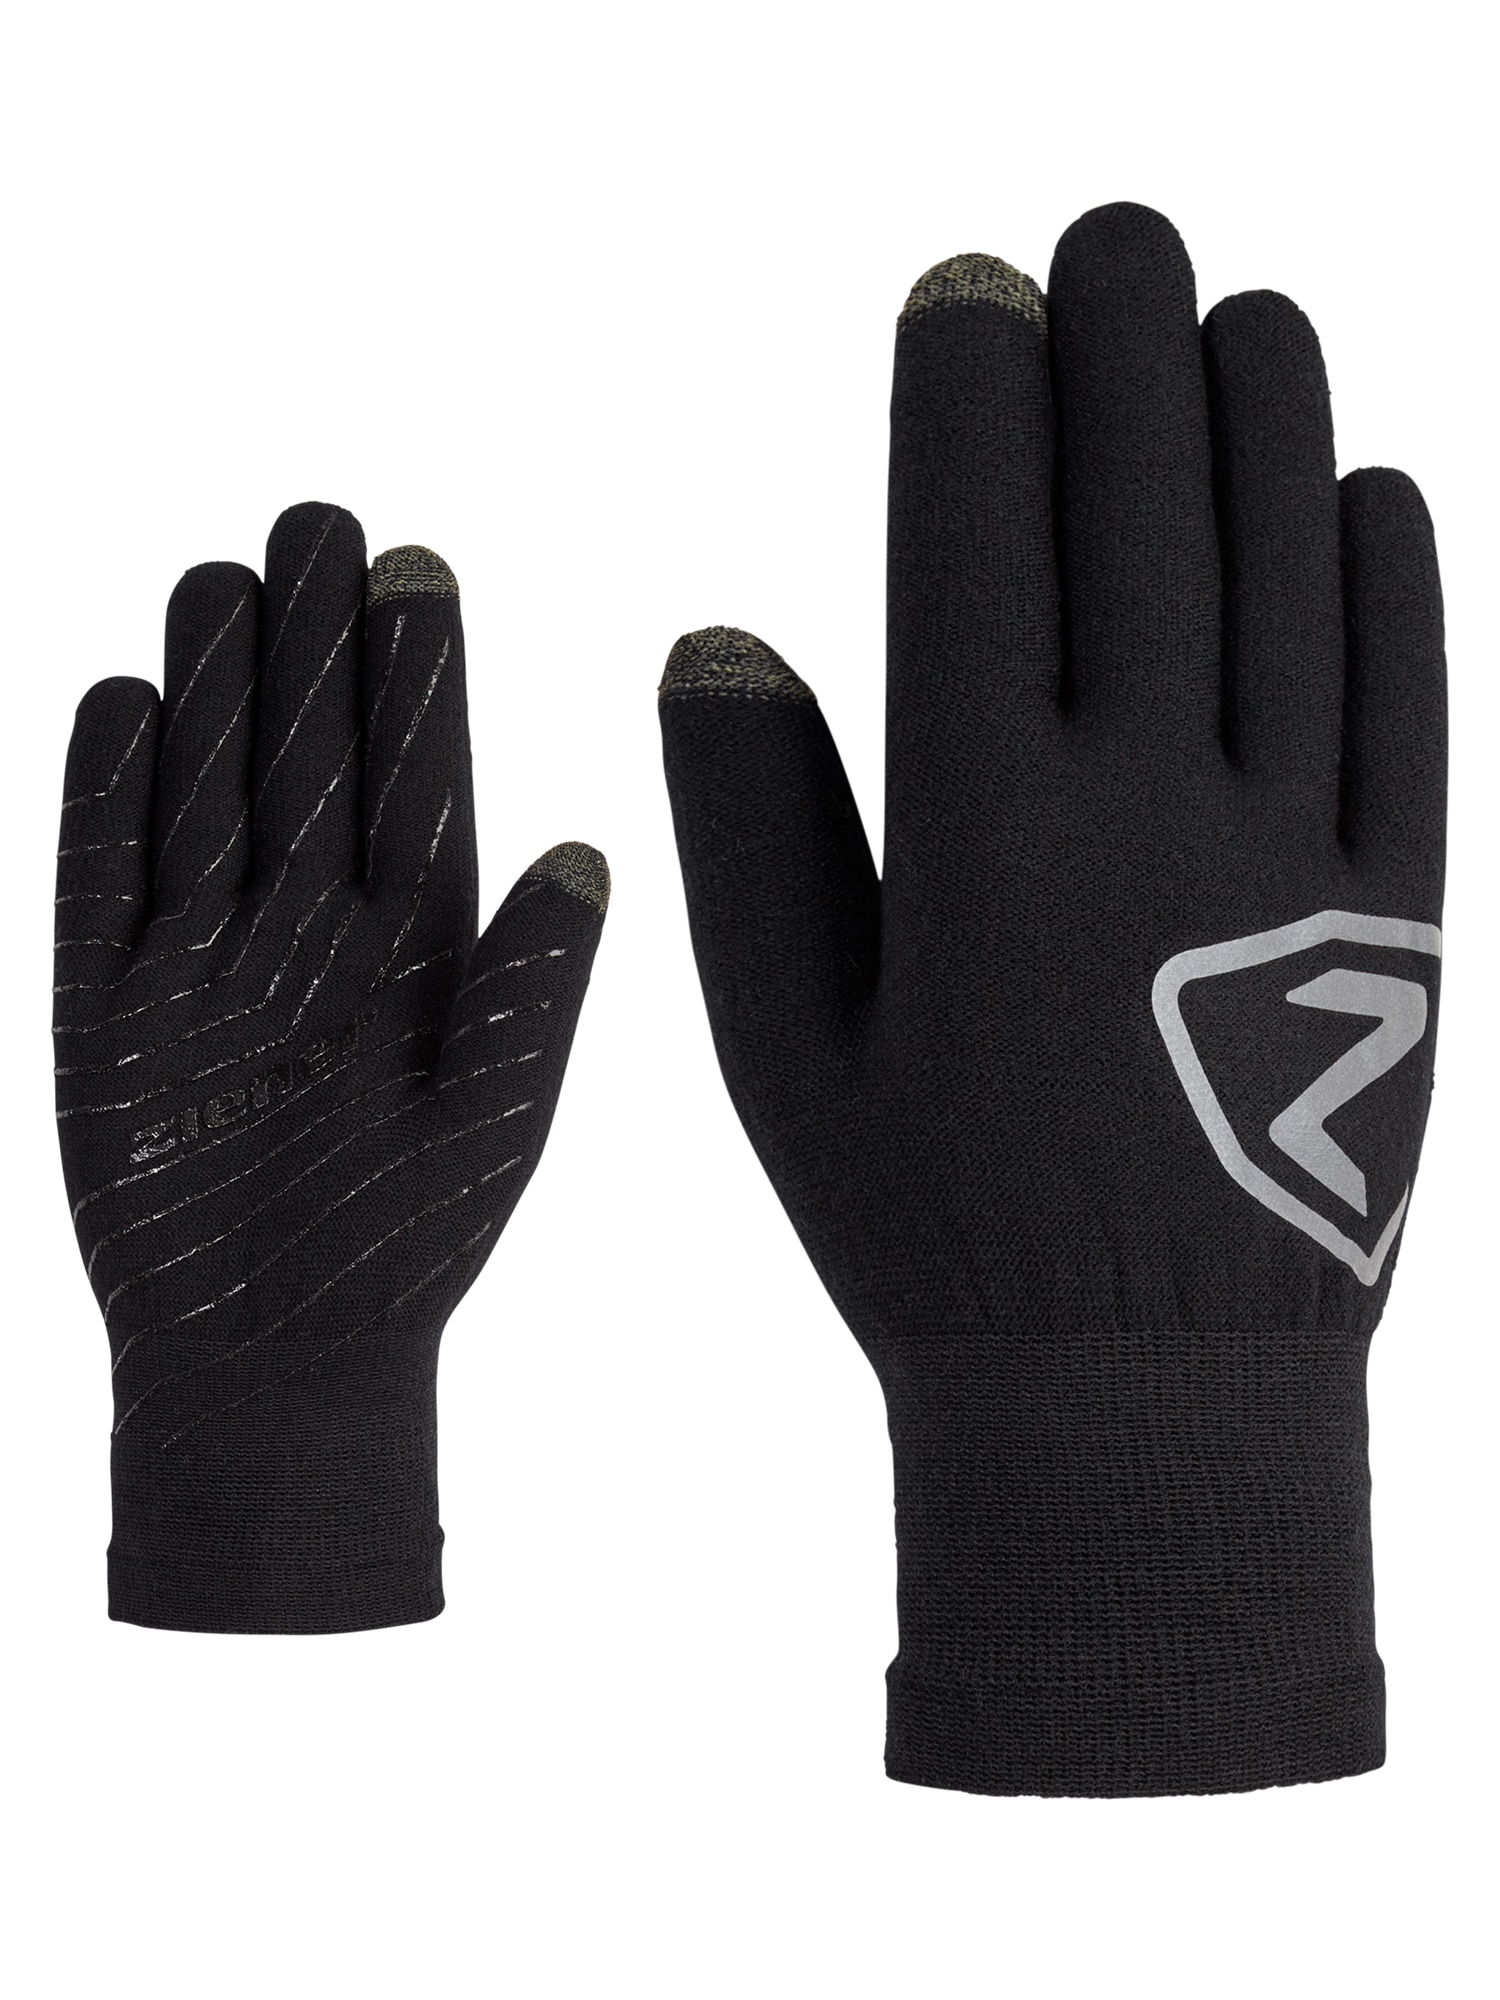 ➤ Handschuhe Mindestbestellwert - ohne shoppen versandkostenfrei